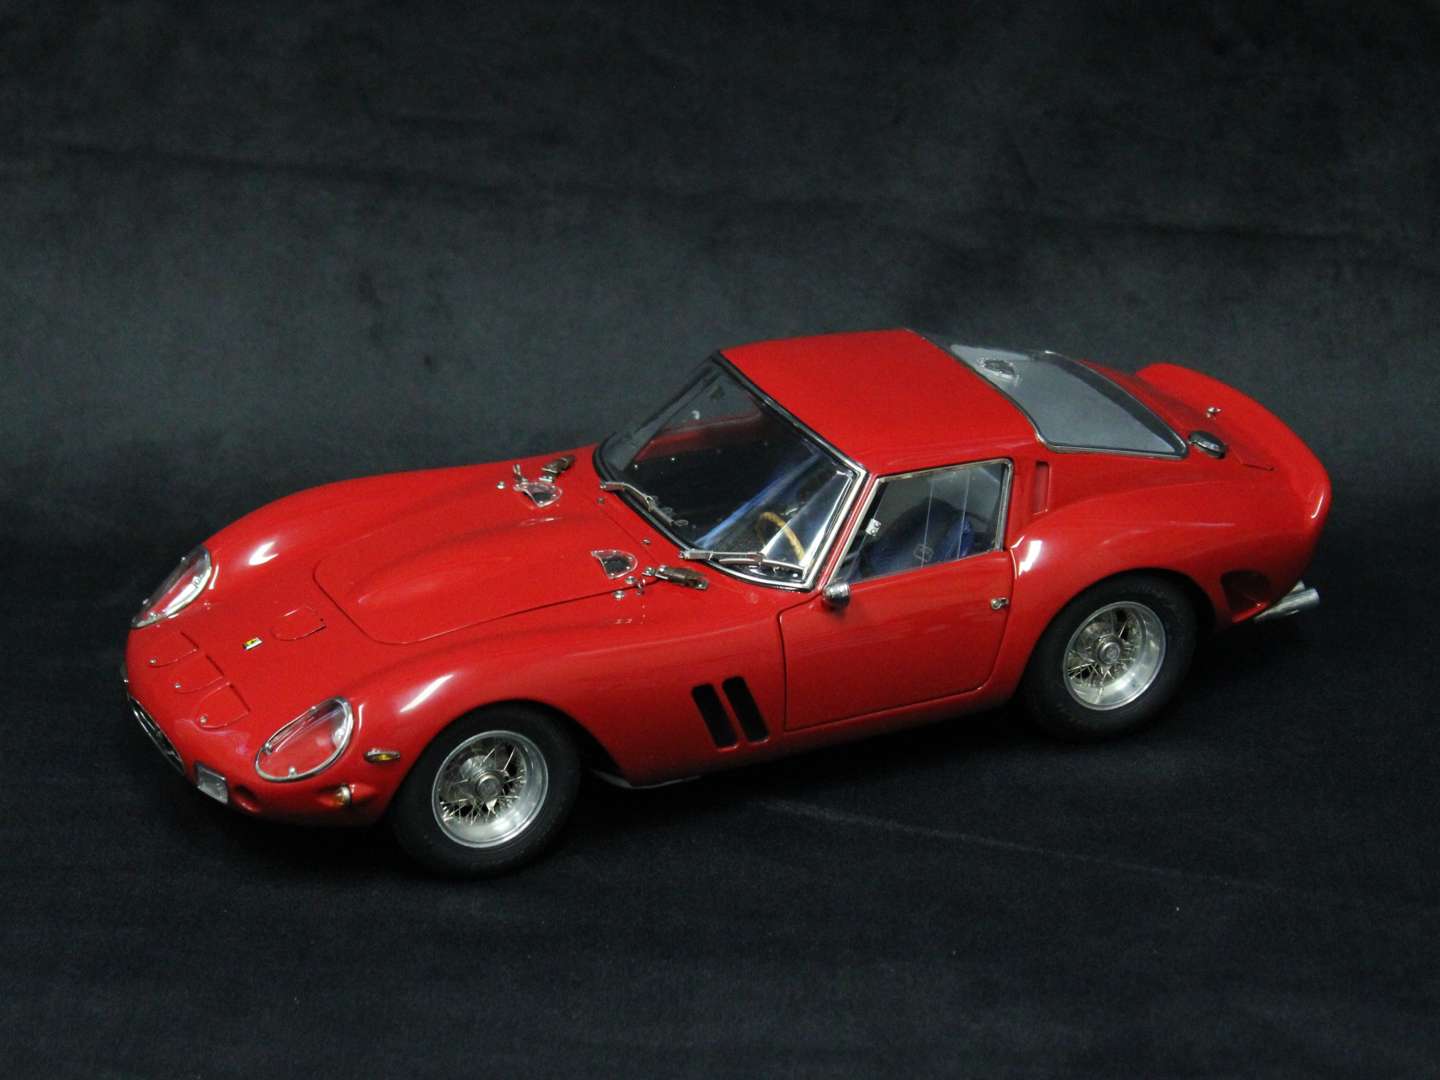 <p>1962 CMC Ferrari 250 GTO model</p>